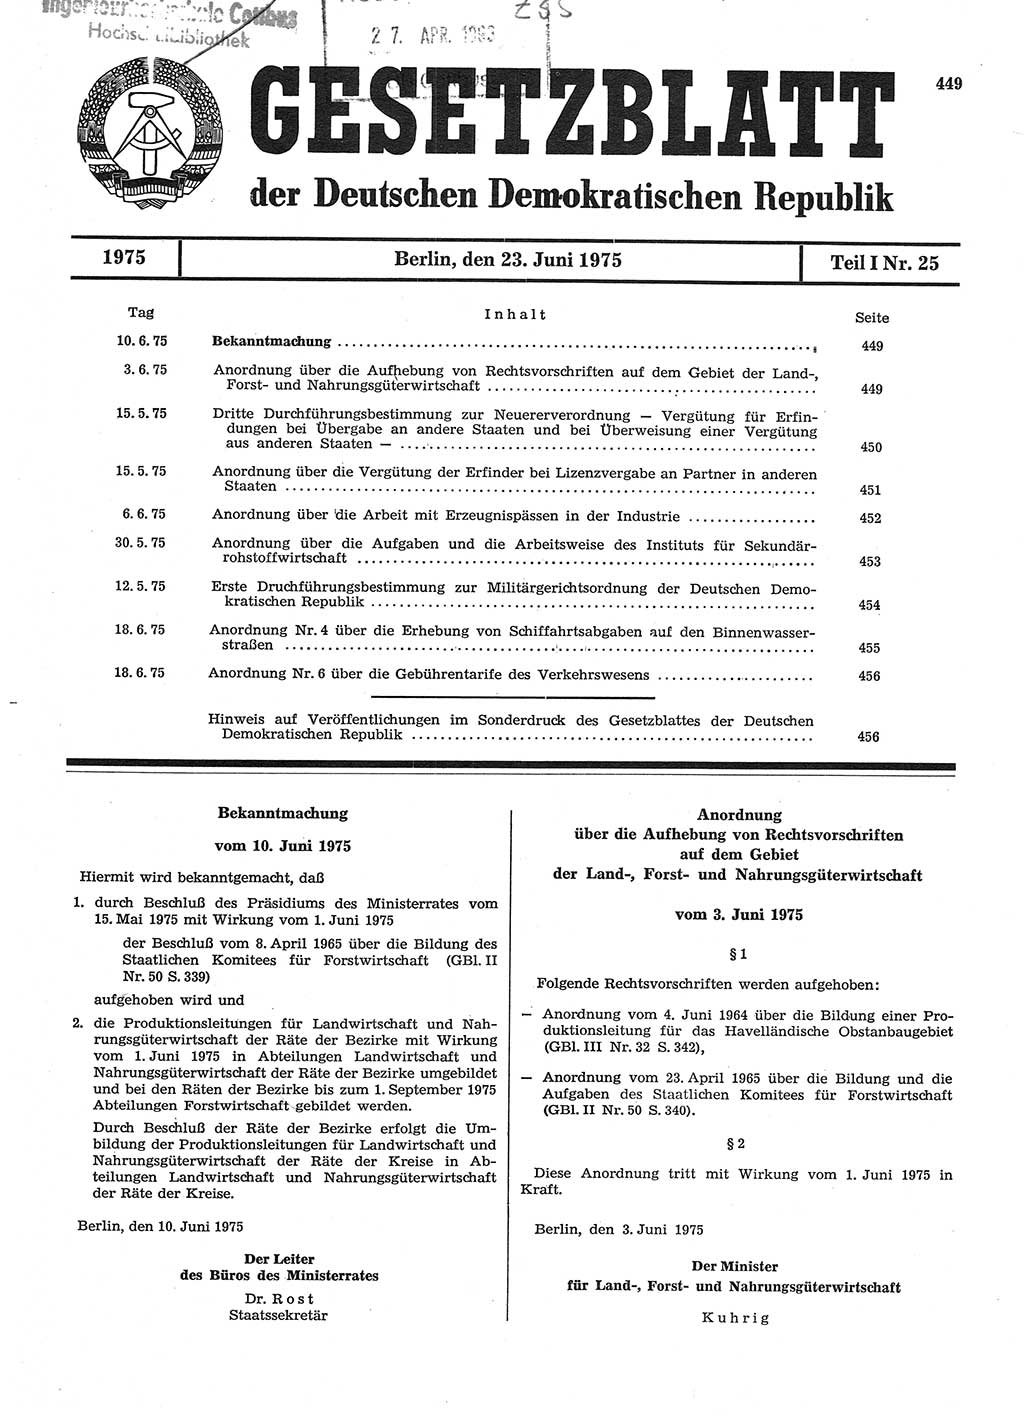 Gesetzblatt (GBl.) der Deutschen Demokratischen Republik (DDR) Teil Ⅰ 1975, Seite 449 (GBl. DDR Ⅰ 1975, S. 449)